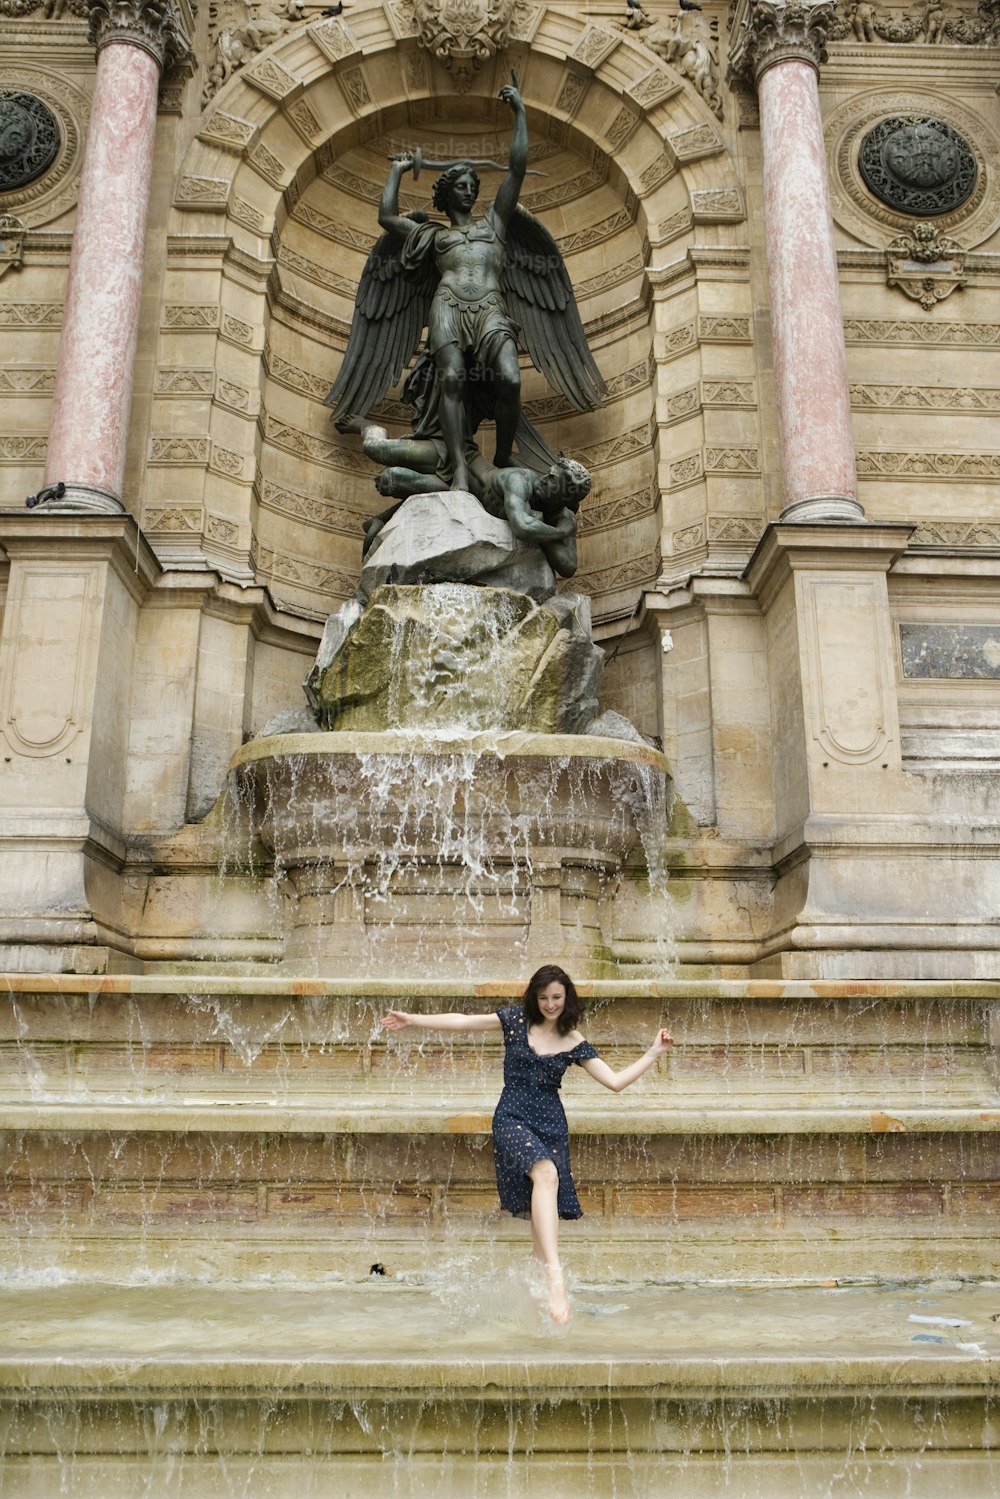 Una donna è in posa davanti a una fontana